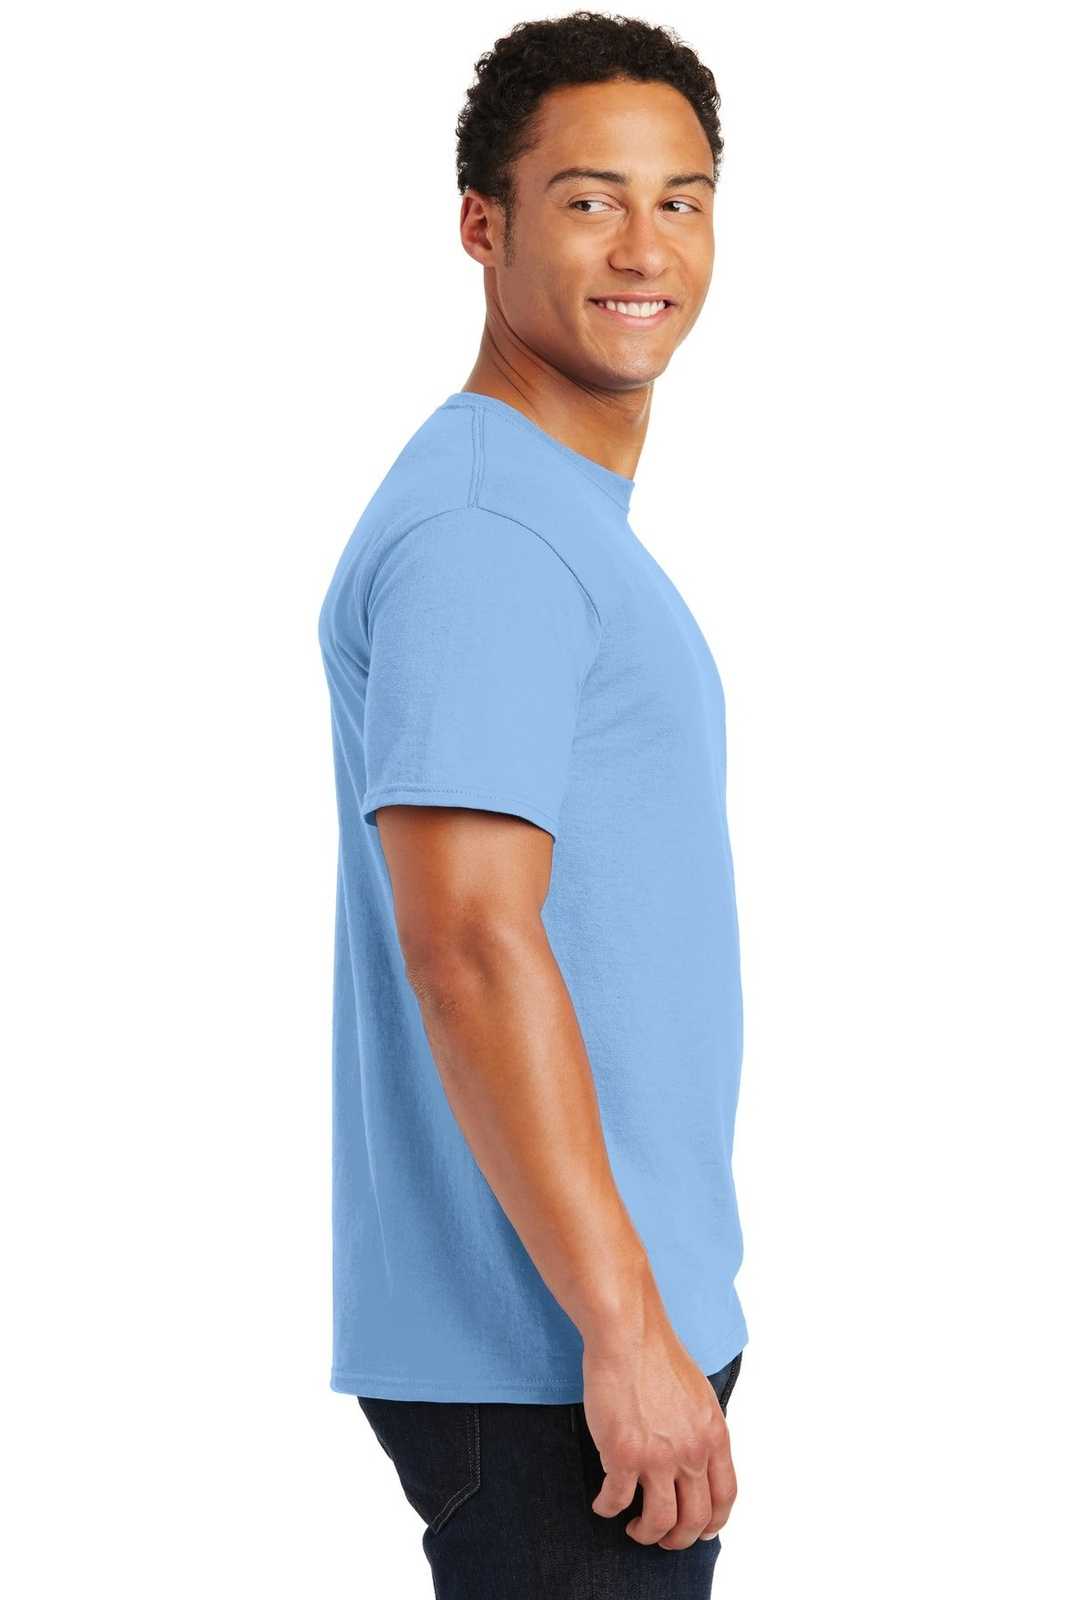 Jerzees 29M Dri-Power Active 50/50 Cotton/Poly T-Shirt - Light Blue - HIT a Double